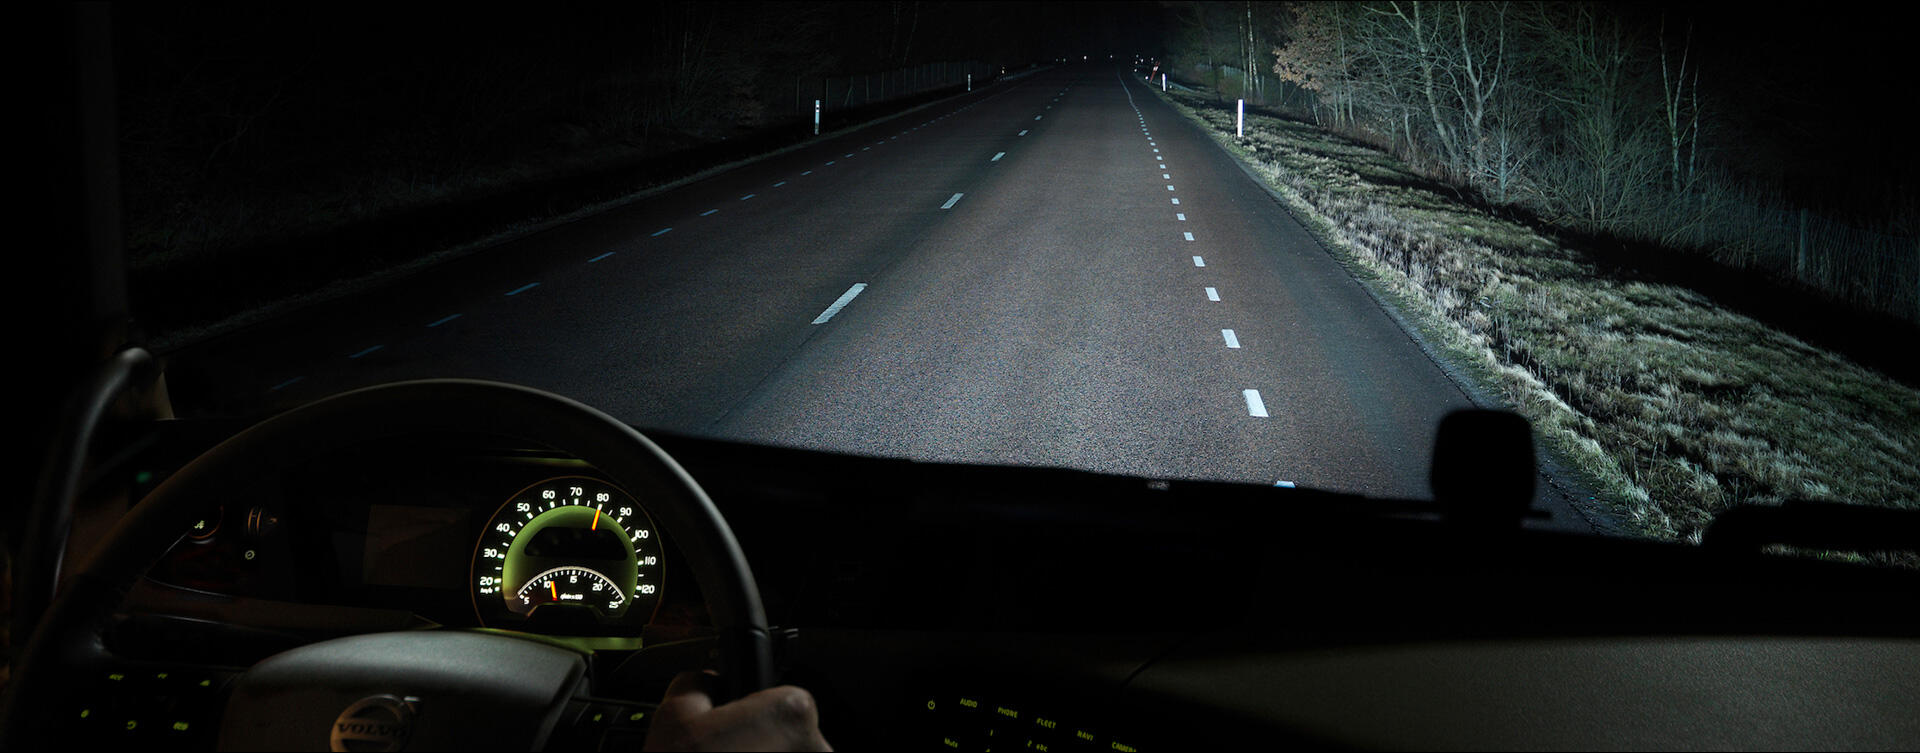 Nachtmodus maakt rijden in het donker prettiger en veiliger